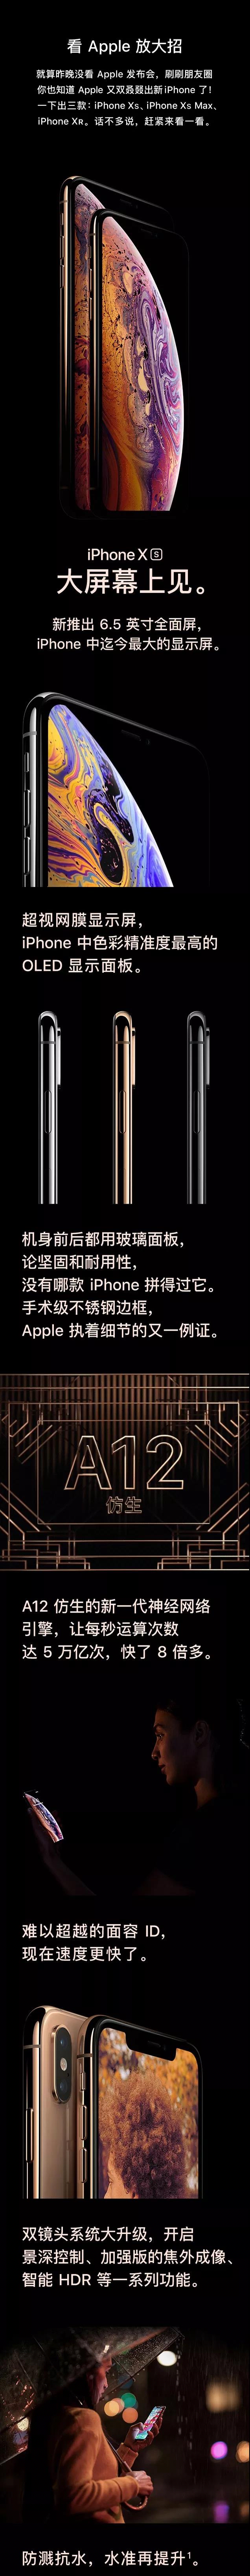 新款 iPhone Xs 现已发布 ，抢先预约！